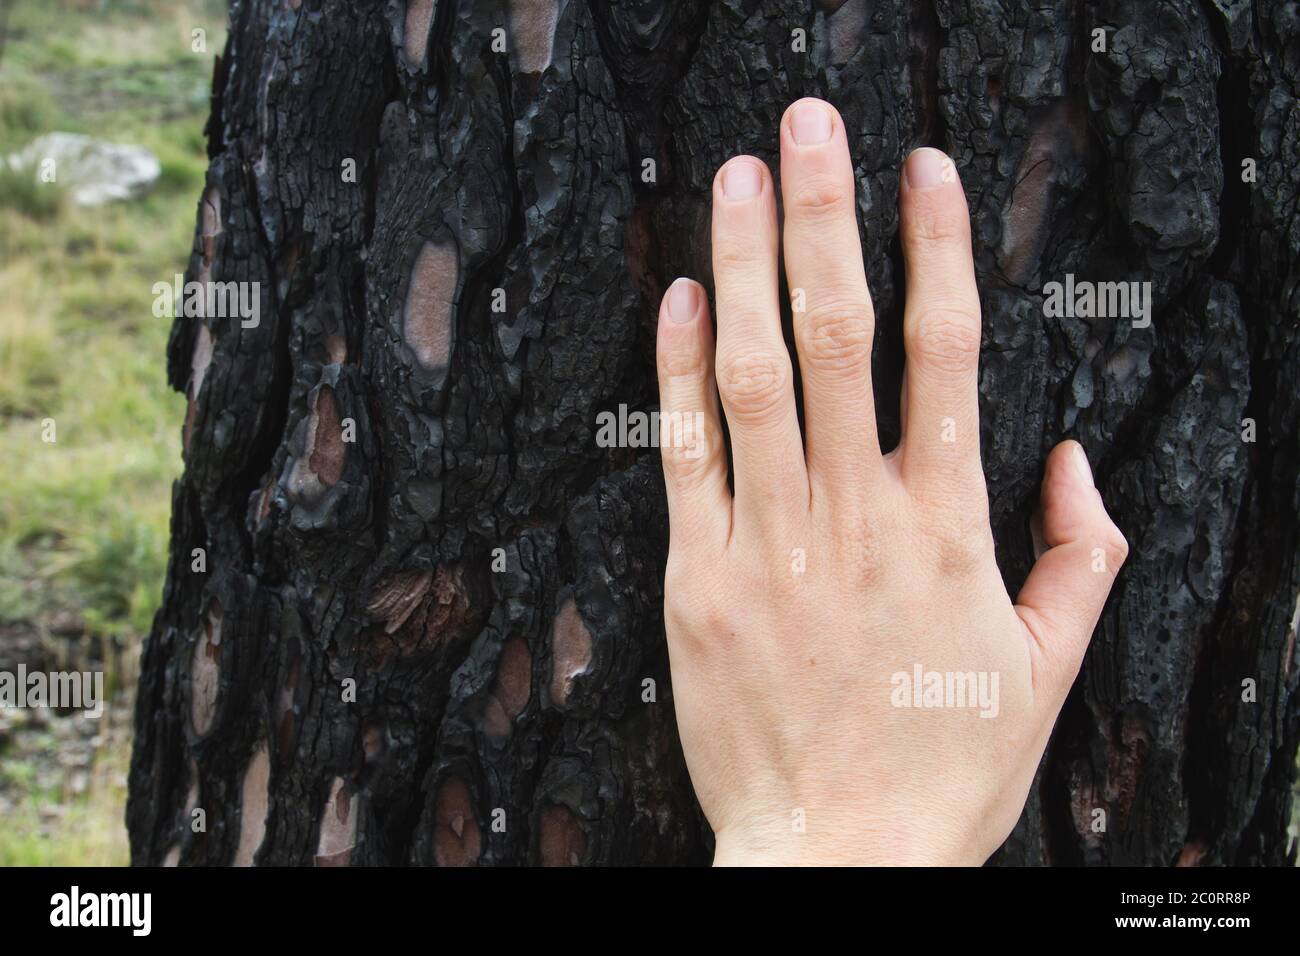 Menschliche Hand, die die Rinde eines verbrannten Baumstamms berührt Nach einem Waldbrand Stockfoto